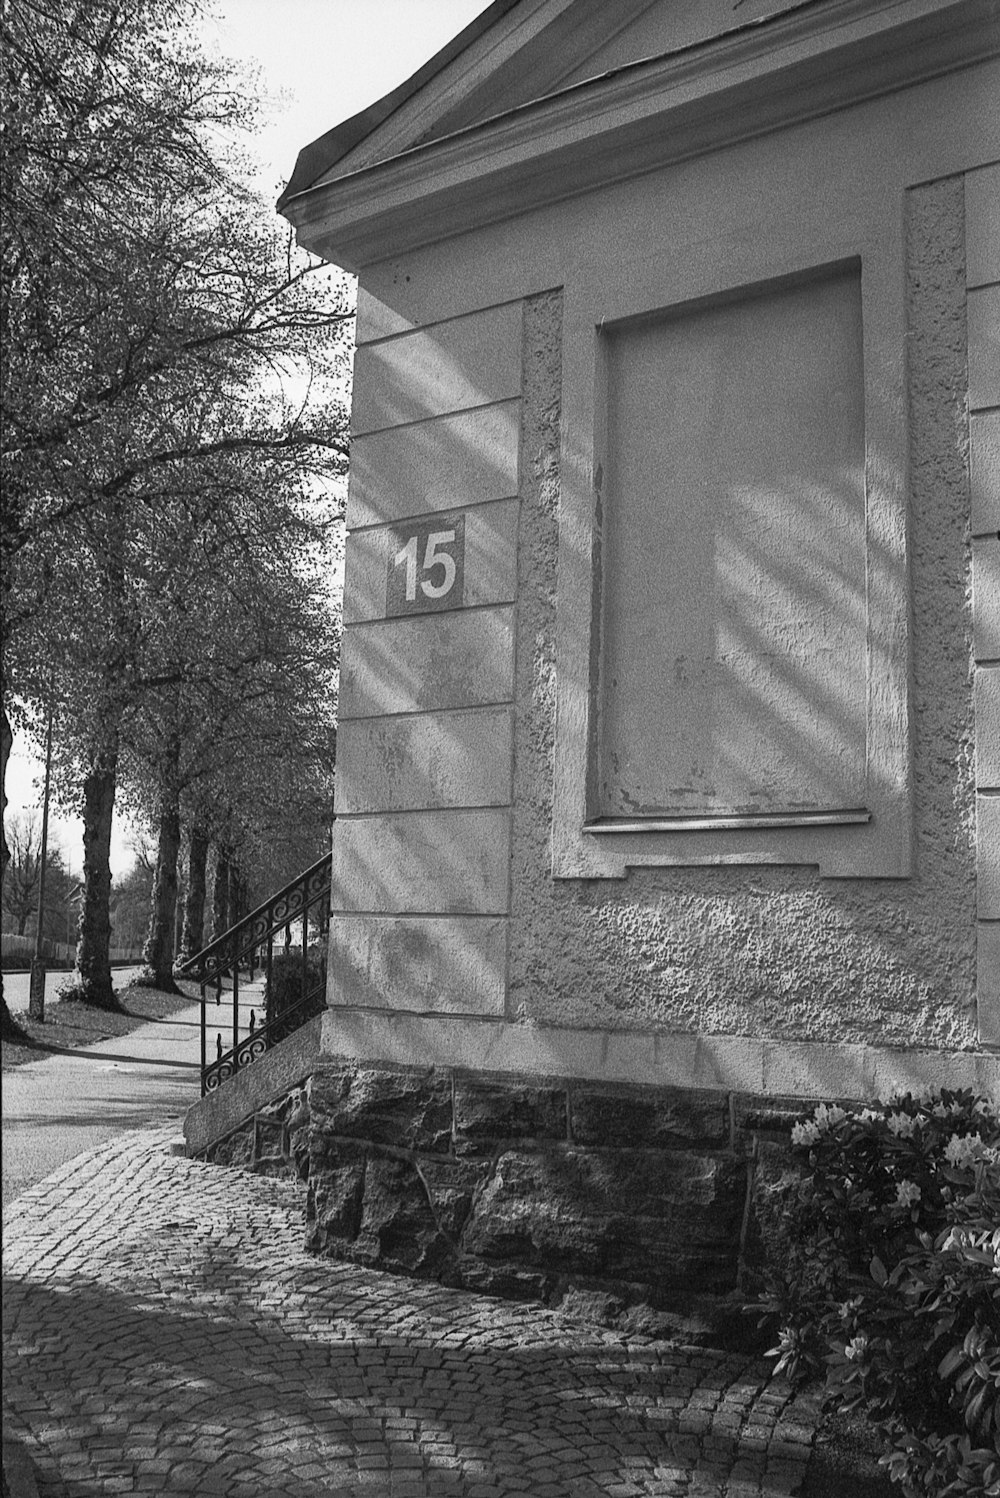 Ein Schwarz-Weiß-Foto eines Gebäudes mit einer Nummer darauf